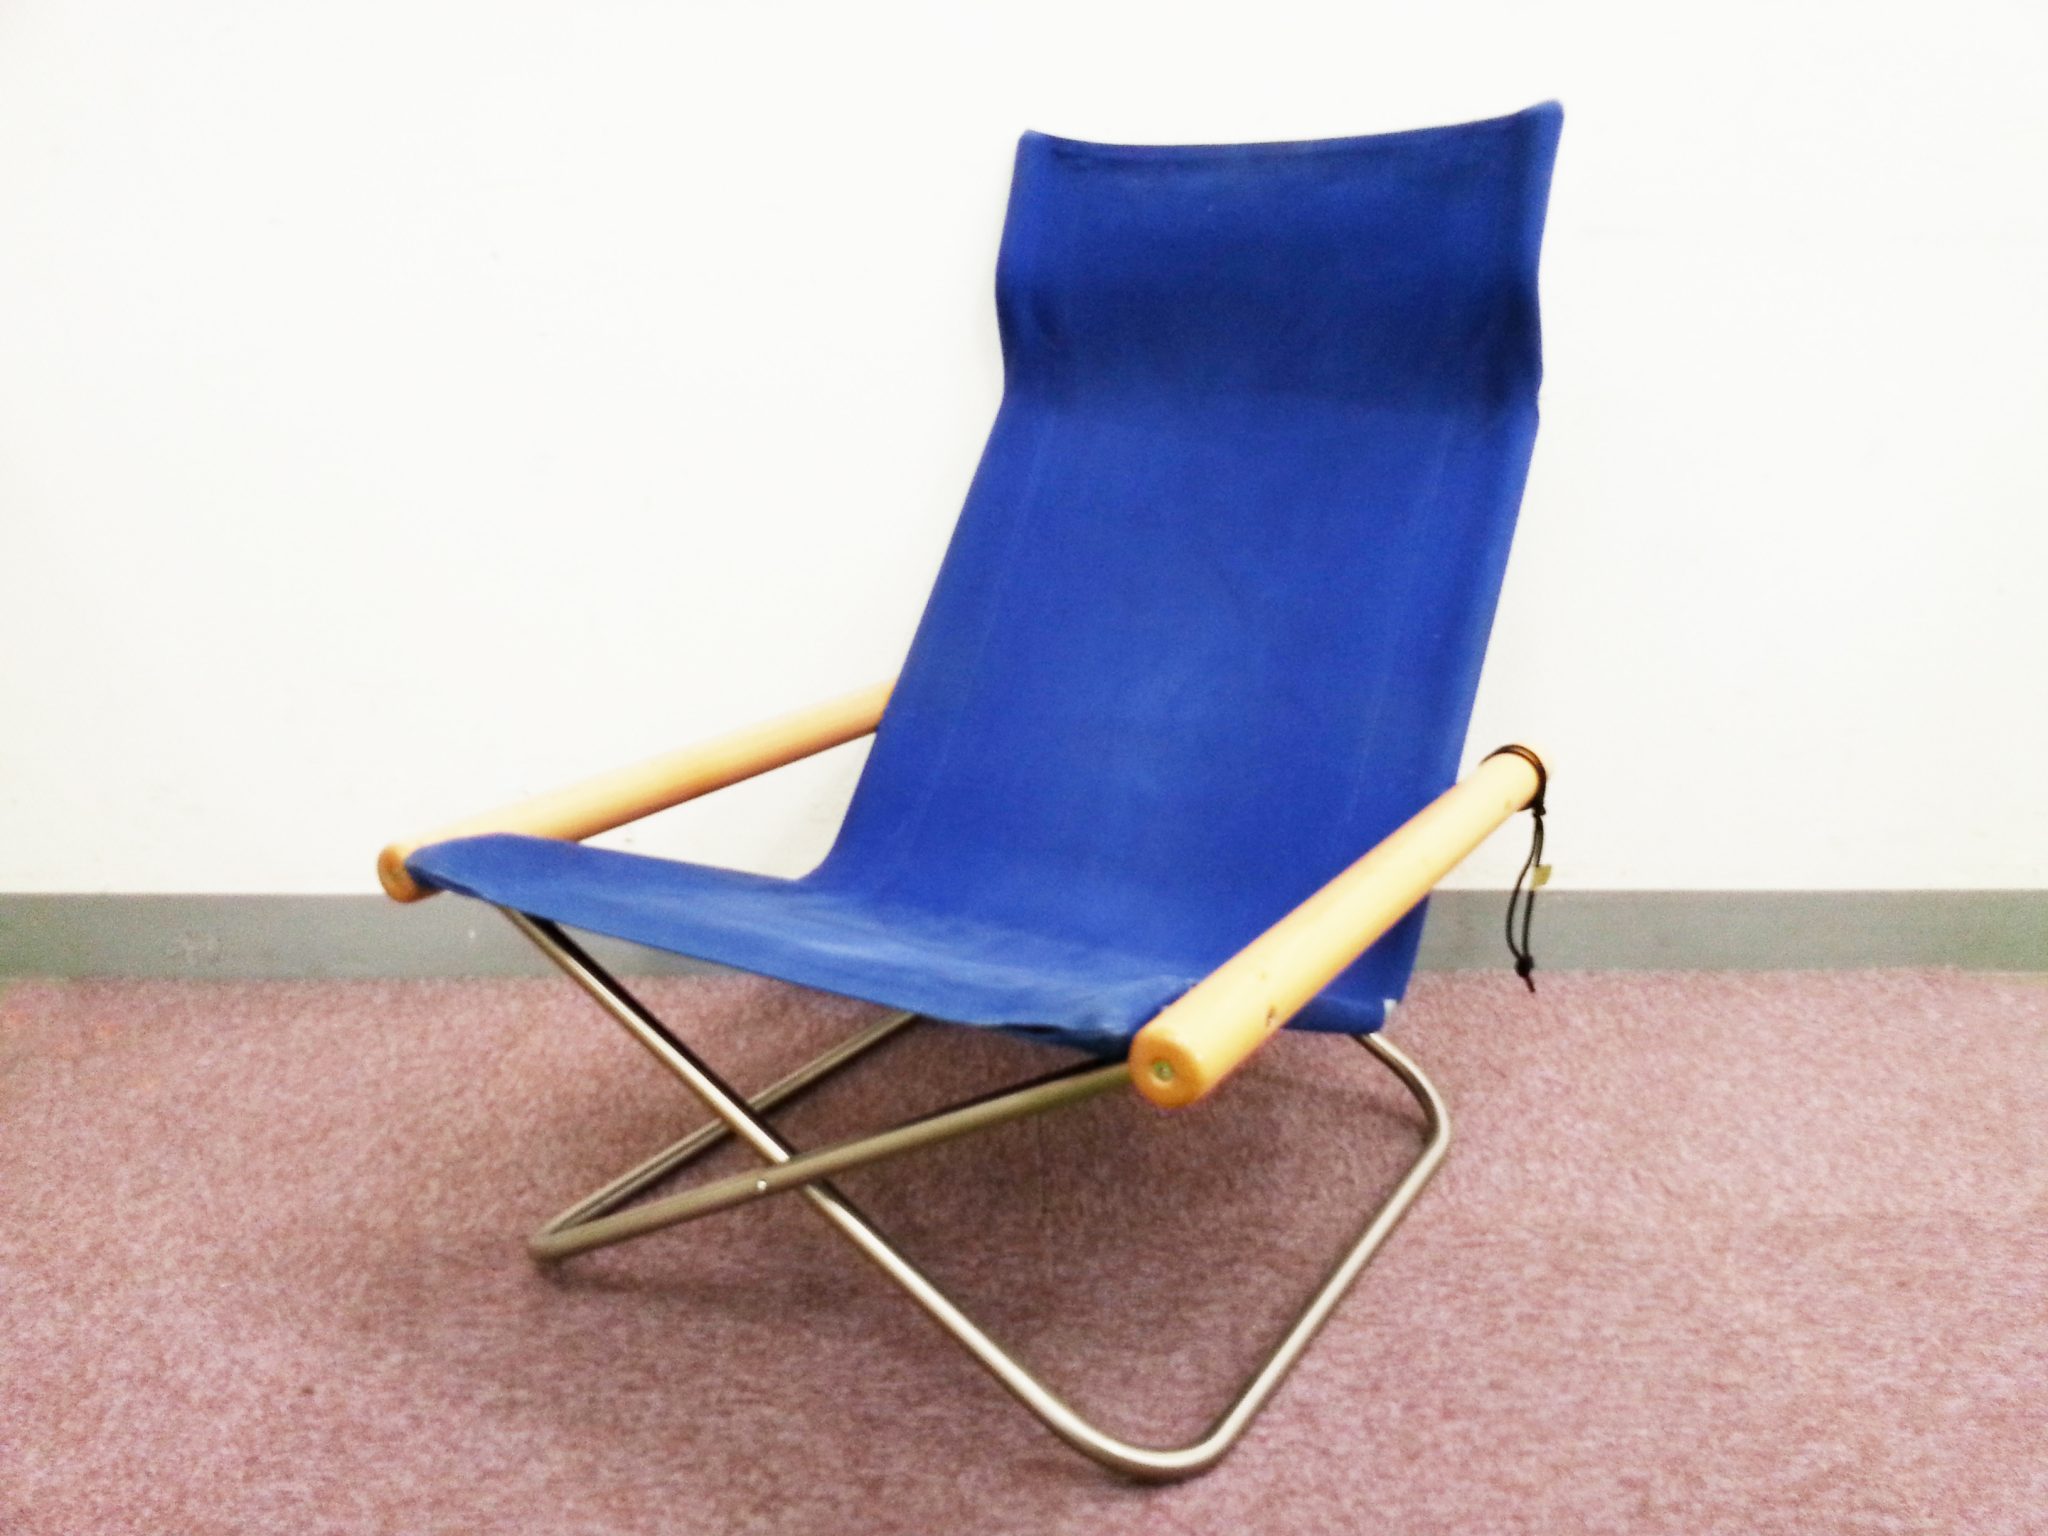 【長期保証】【送料込み】 ニーチェア Nychair X ブルー 青 椅子